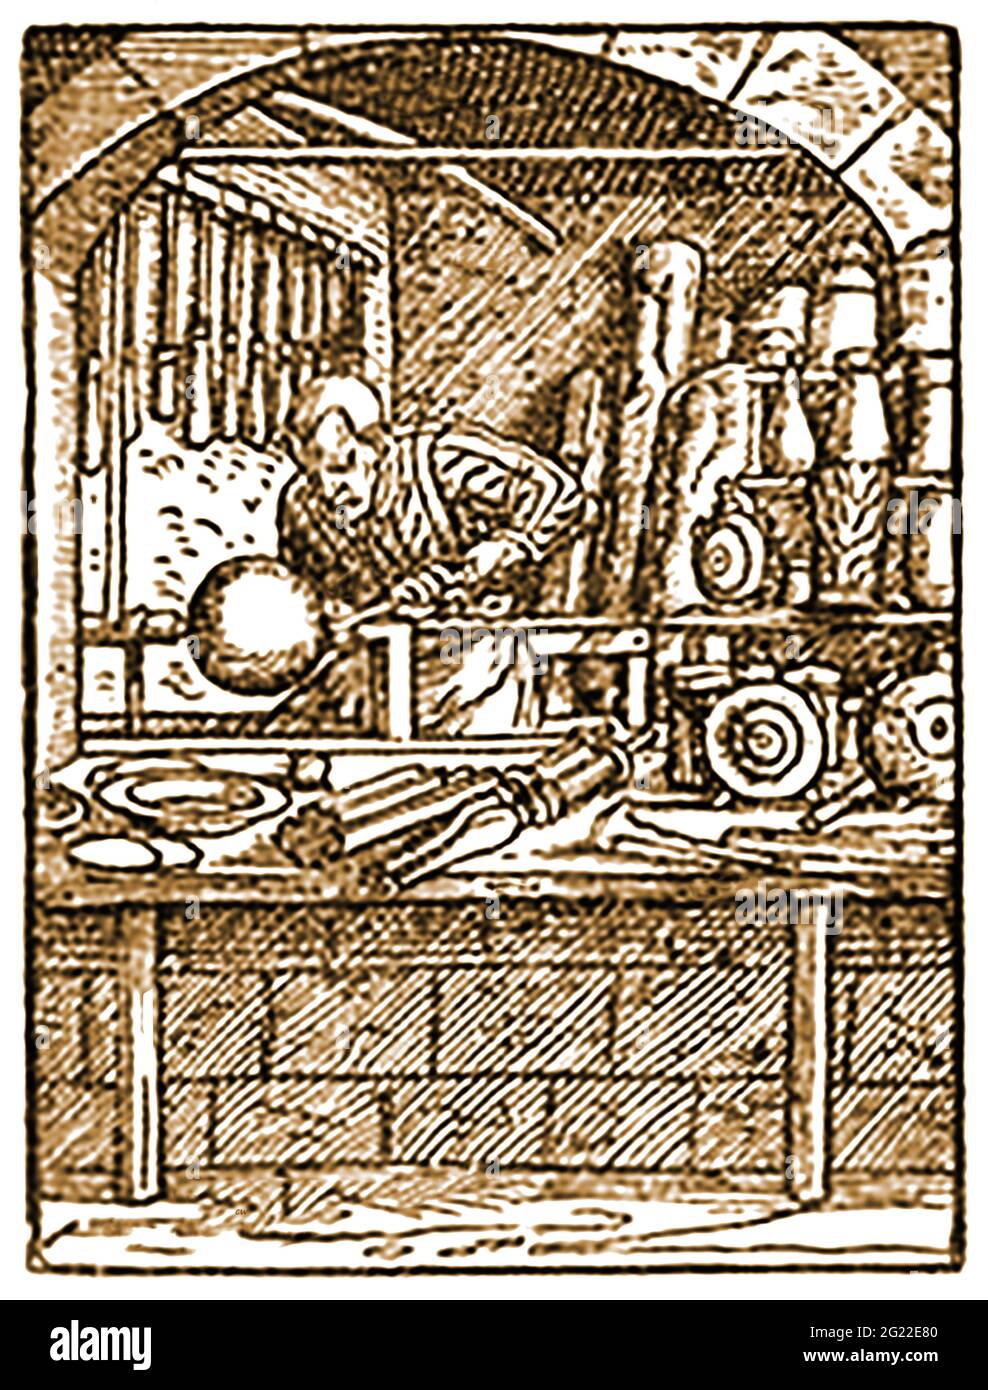 Ein alter Holzschnitt, der einen Holz- und Metallwender aus dem 16. Jahrhundert in seinem Laden zeigt, der auf einem britischen Marktplatz zur Straße hin offen ist. Stockfoto